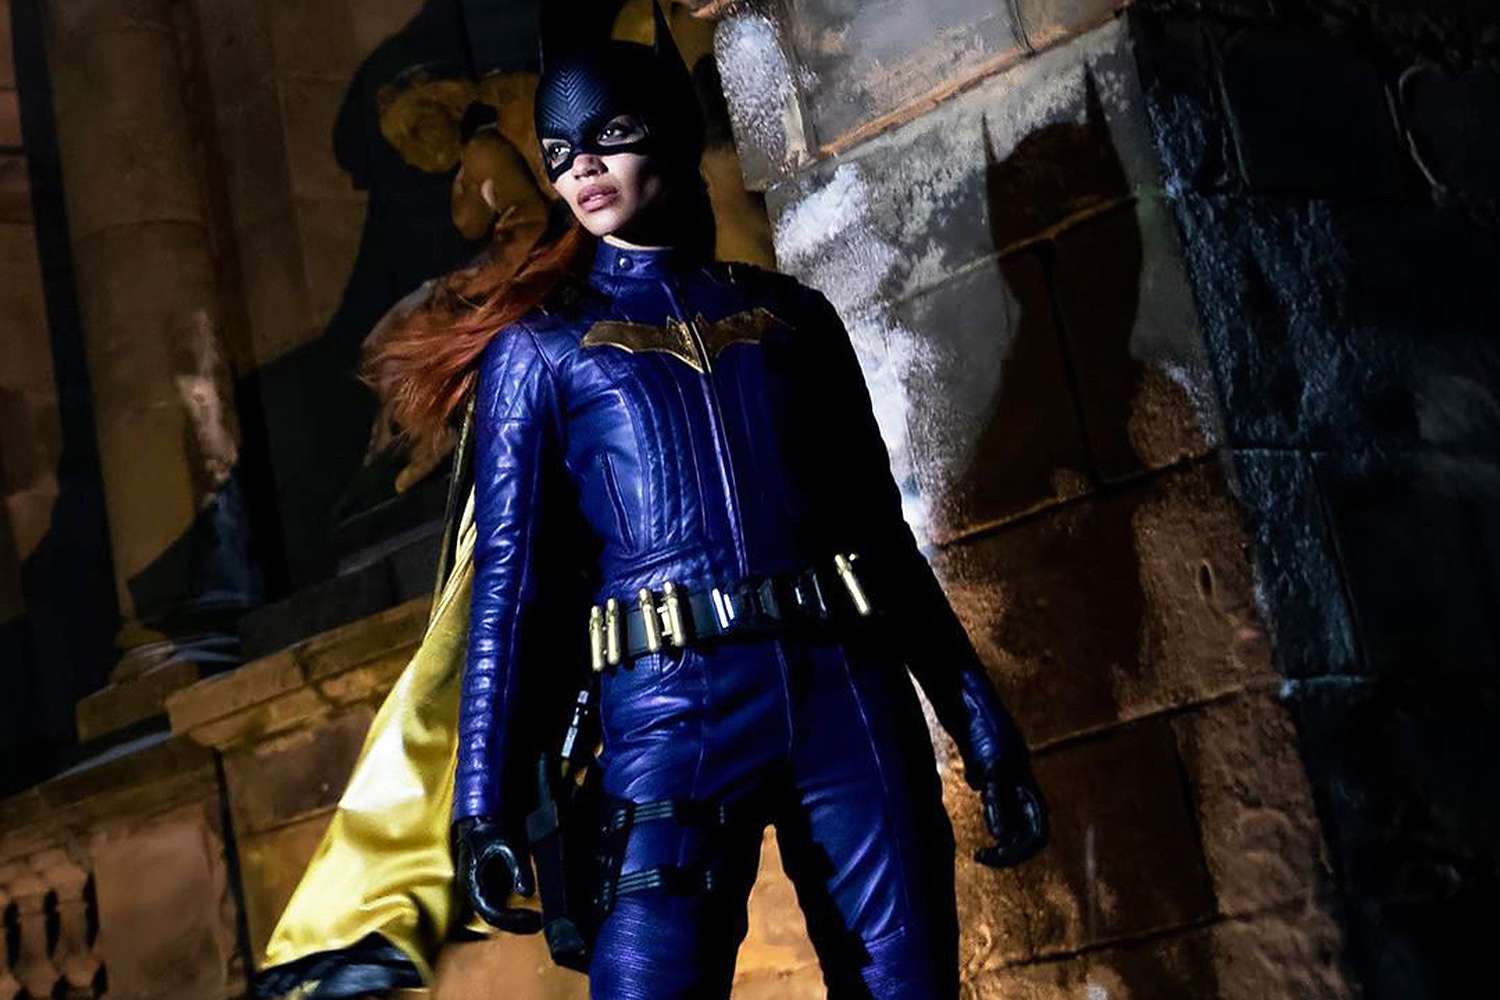 'Batgirl' โดนหัวหน้า DC คนใหม่ตำหนิว่า 'ไม่สามารถเผยแพร่ได้' หลังจากยกเลิก: 'ตัดสินใจถูกต้องแล้ว'